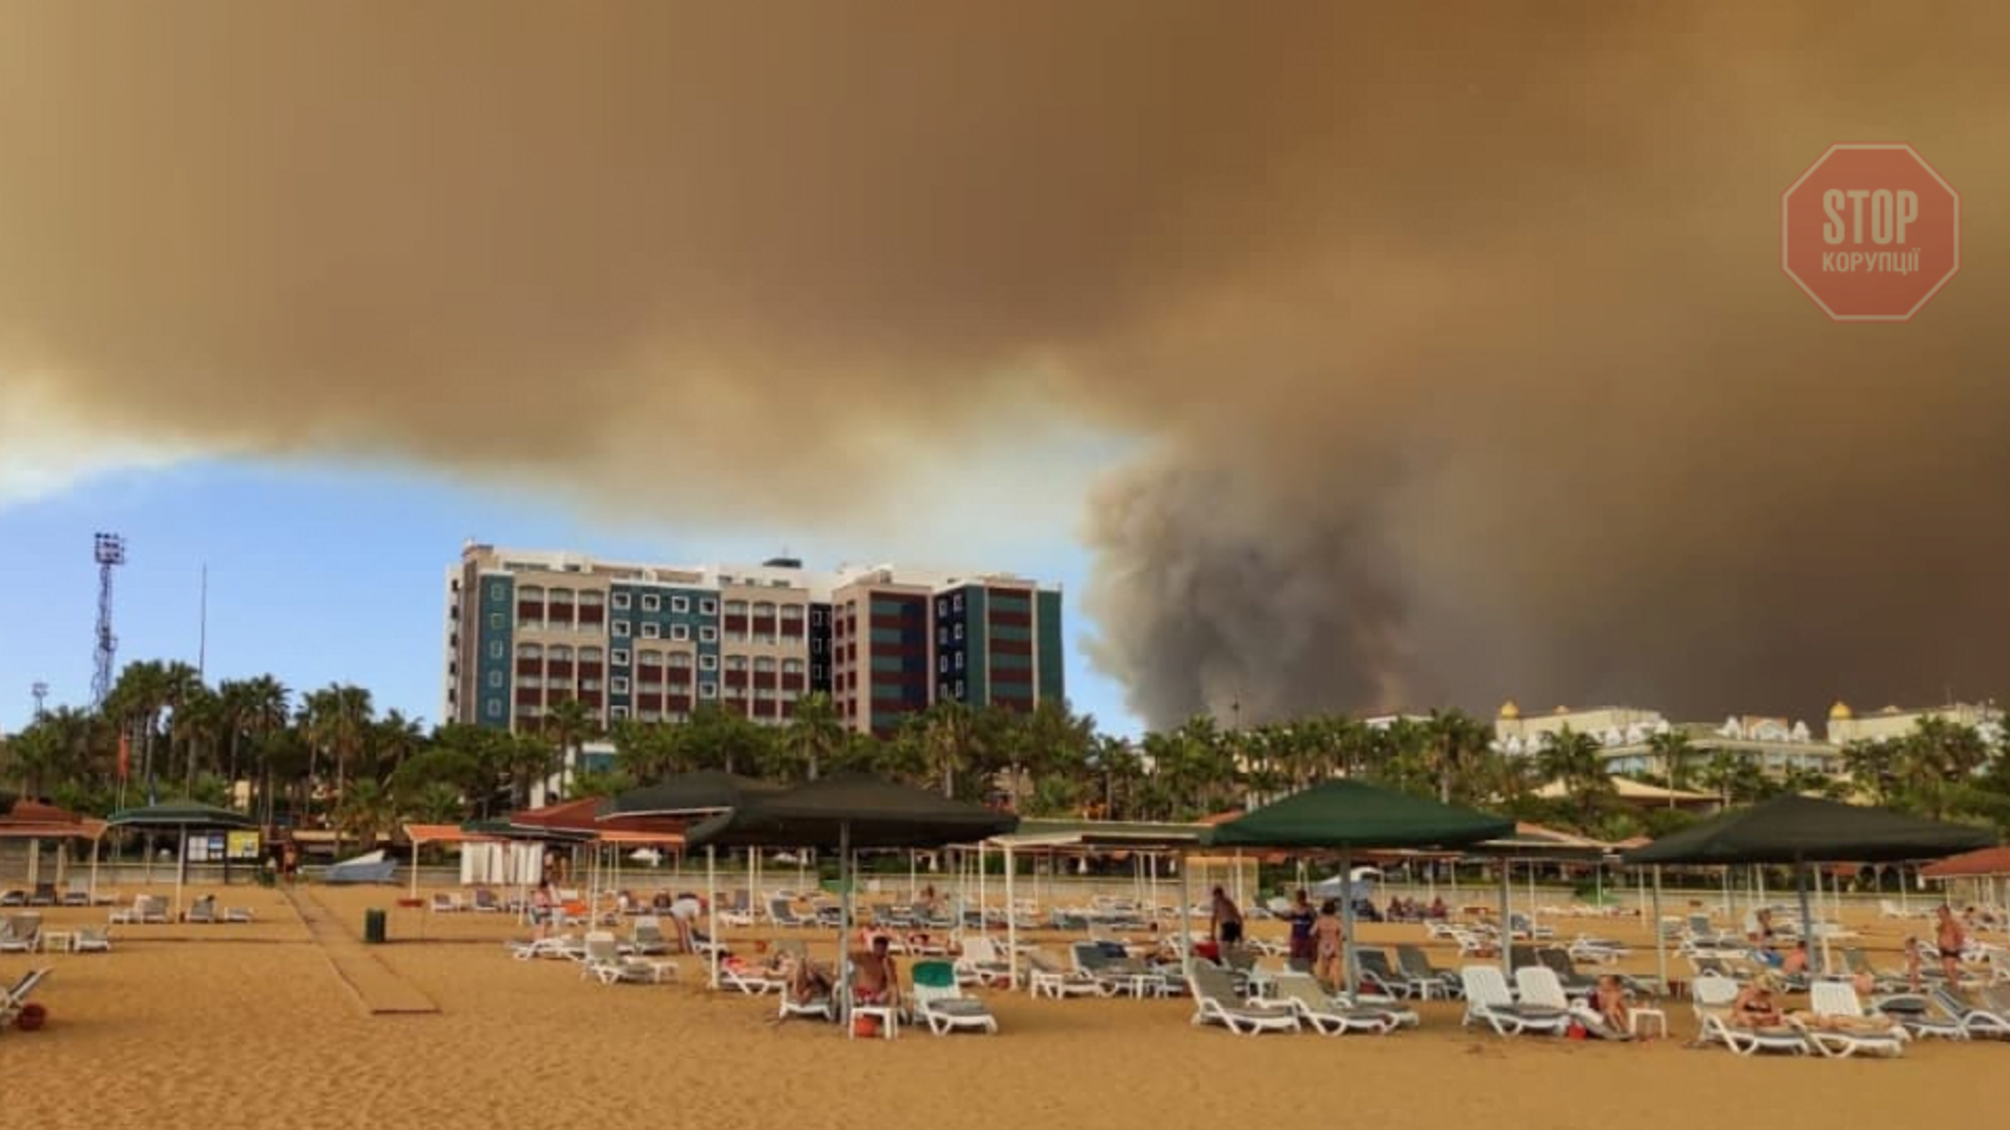 Лісові пожежі в Туреччині: вогонь підбирається до готелів з українцями